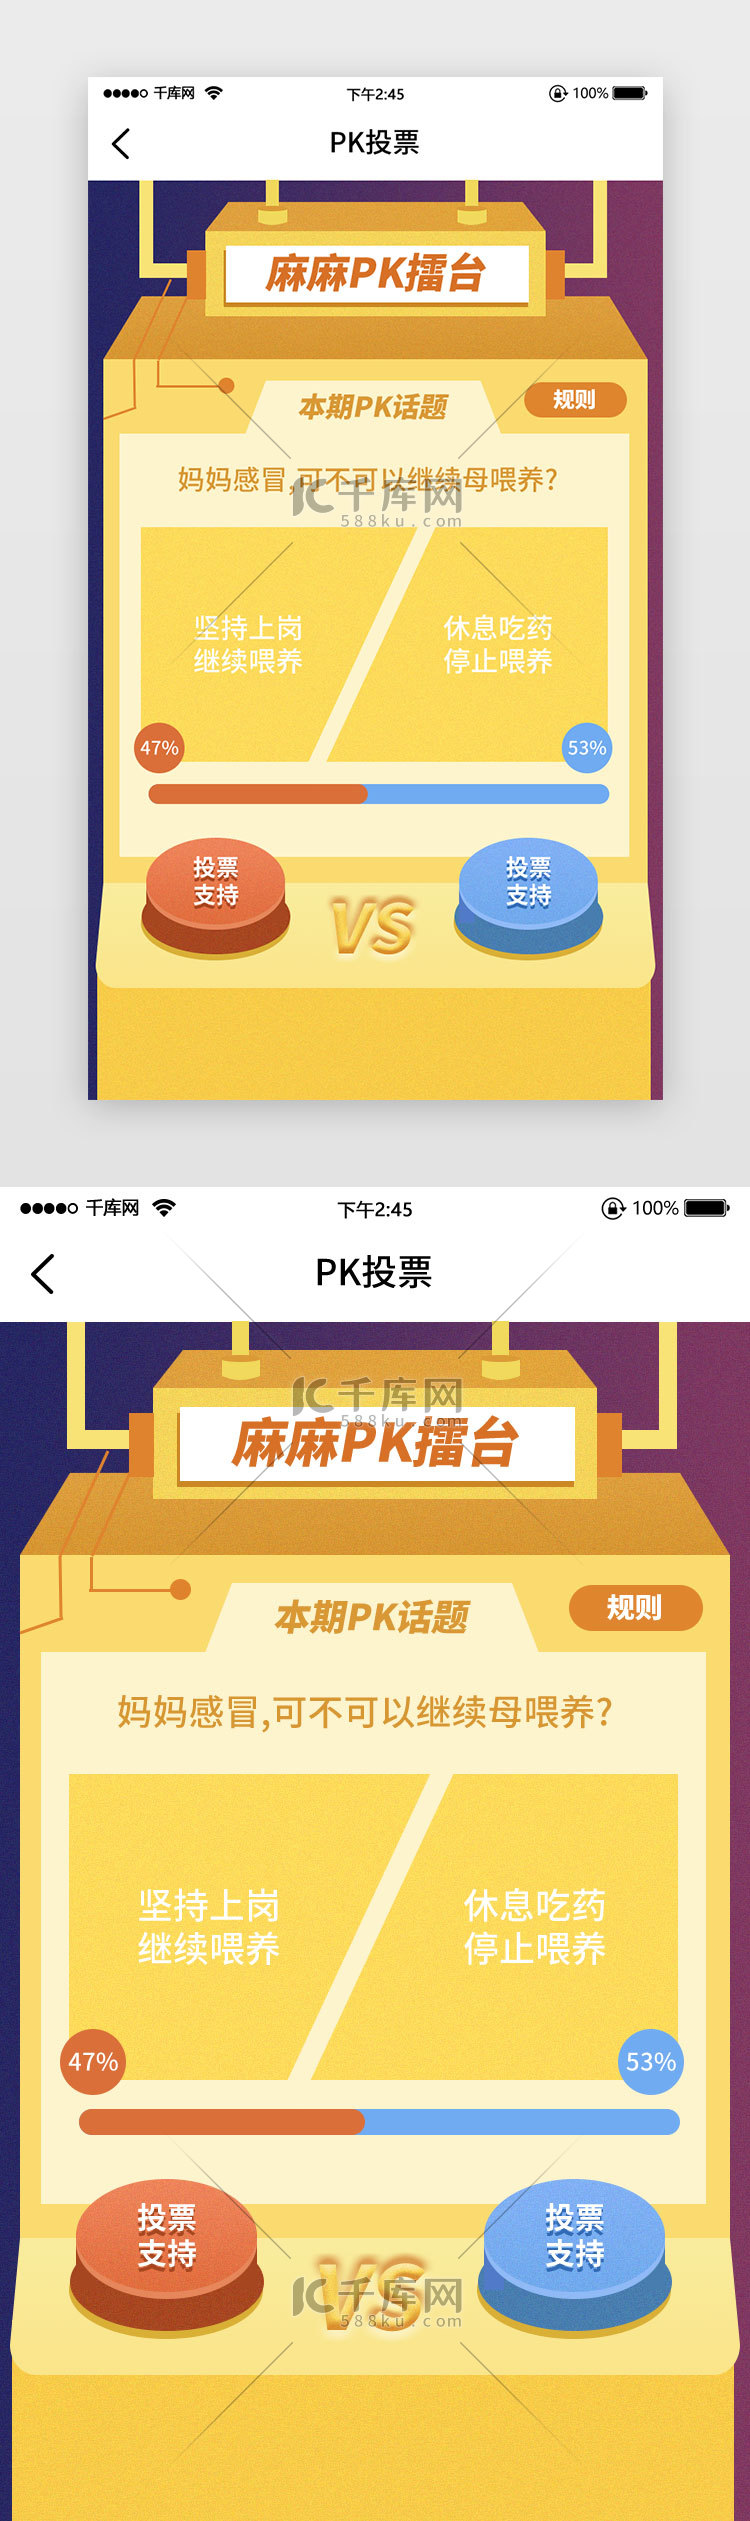 PK比赛投票机器按钮选择游戏黄色对战话题